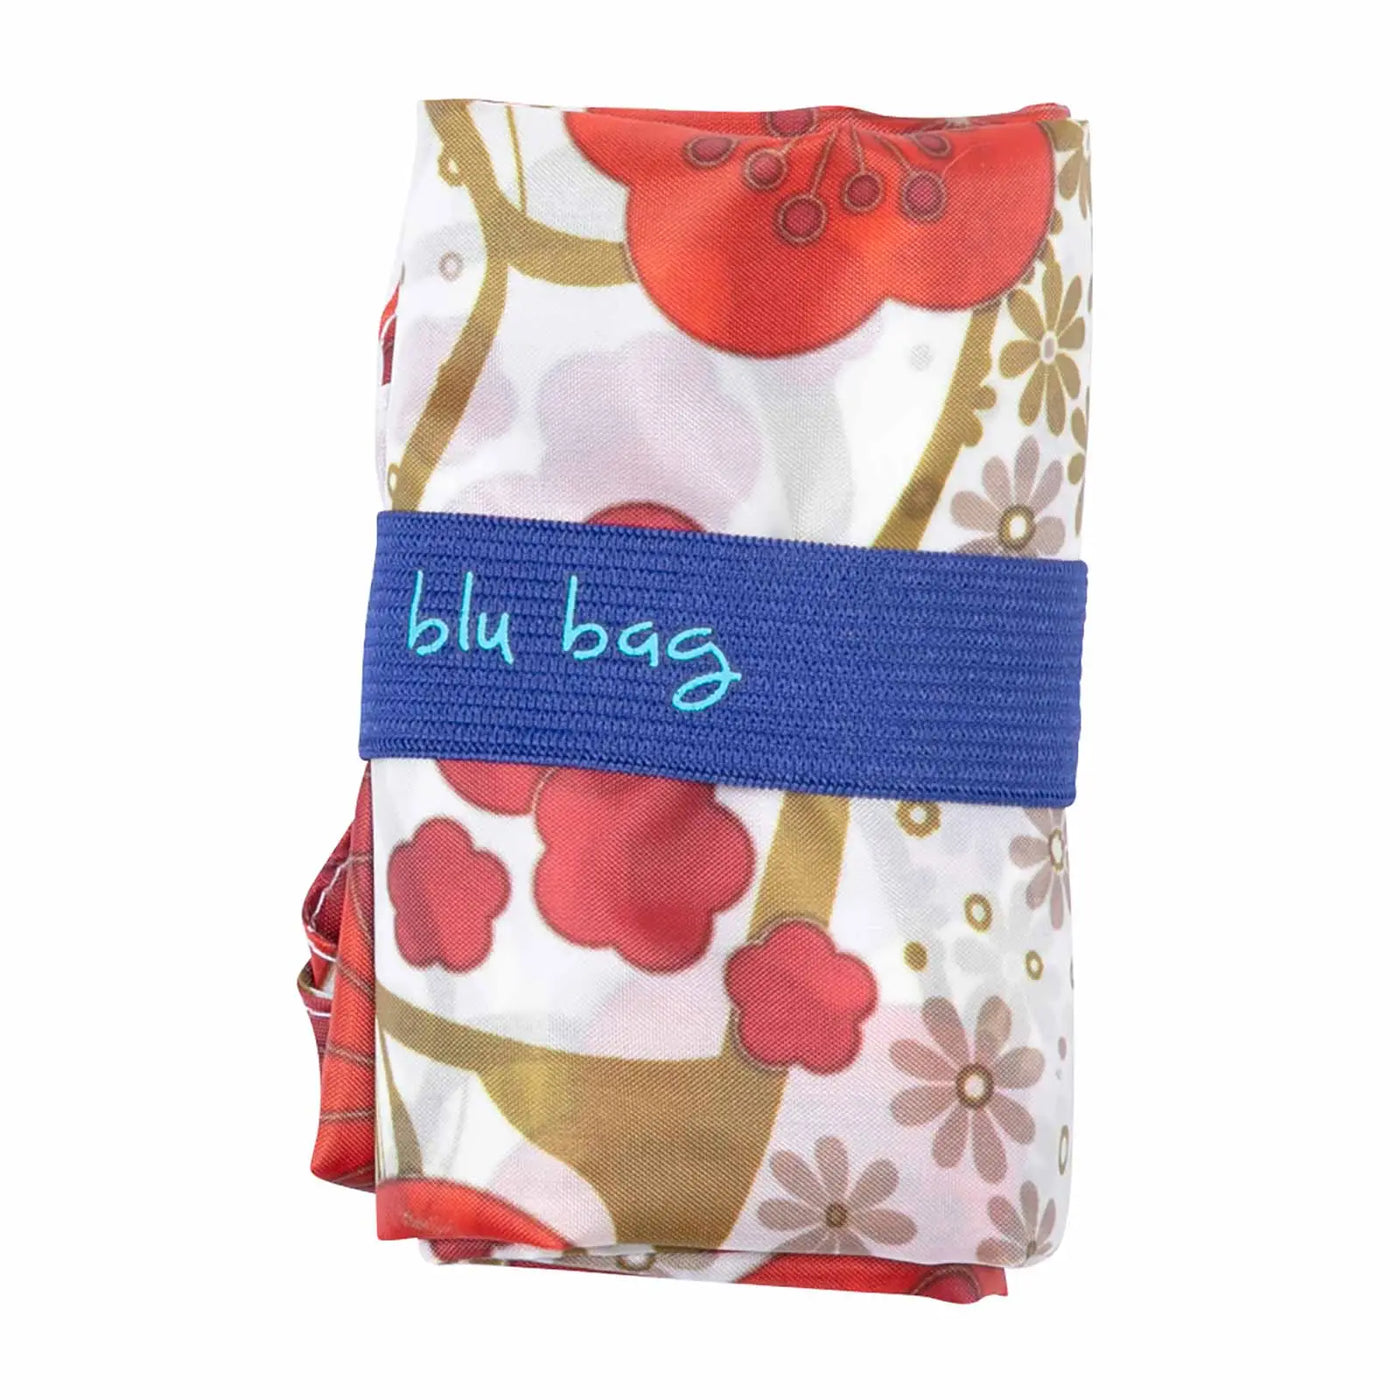 Kintsugi 'Blu Bag' - Reusable Bag